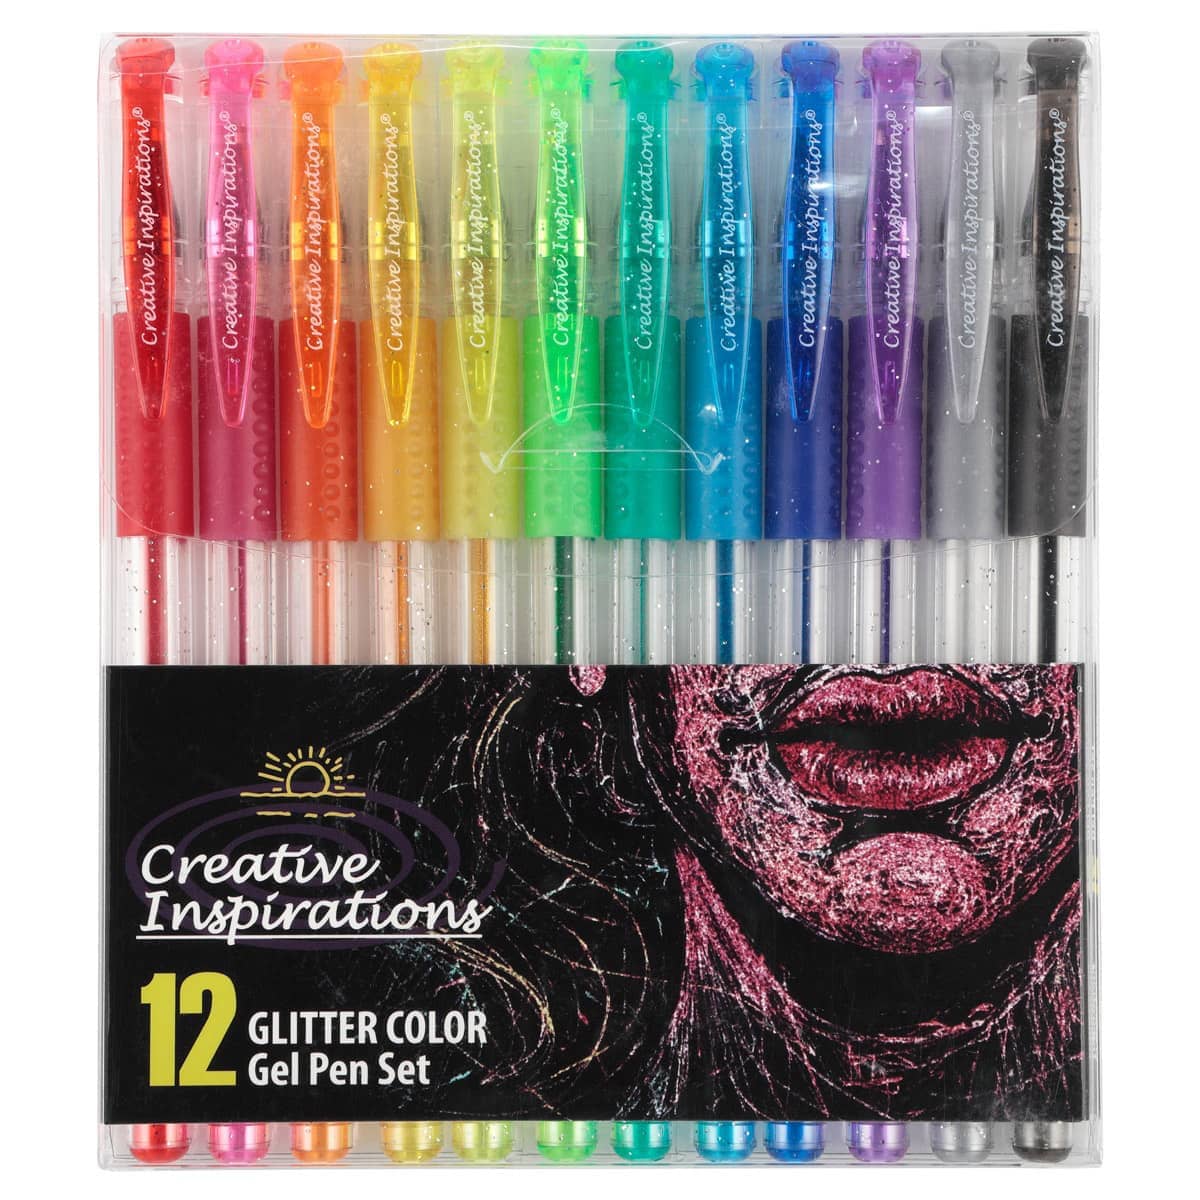 Gel Pen Color Set of 12